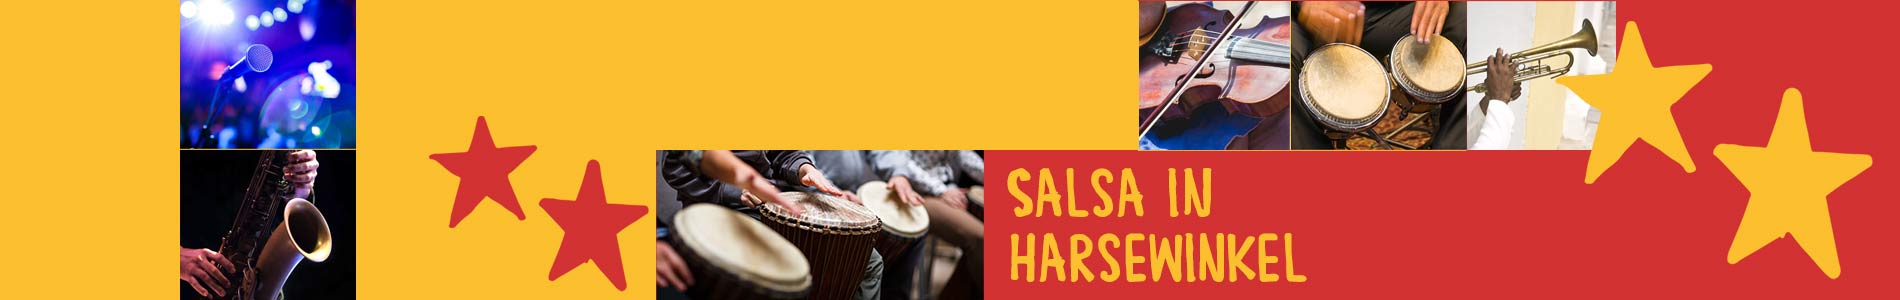 Salsa in Harsewinkel – Salsa lernen und tanzen, Tanzkurse, Partys, Veranstaltungen